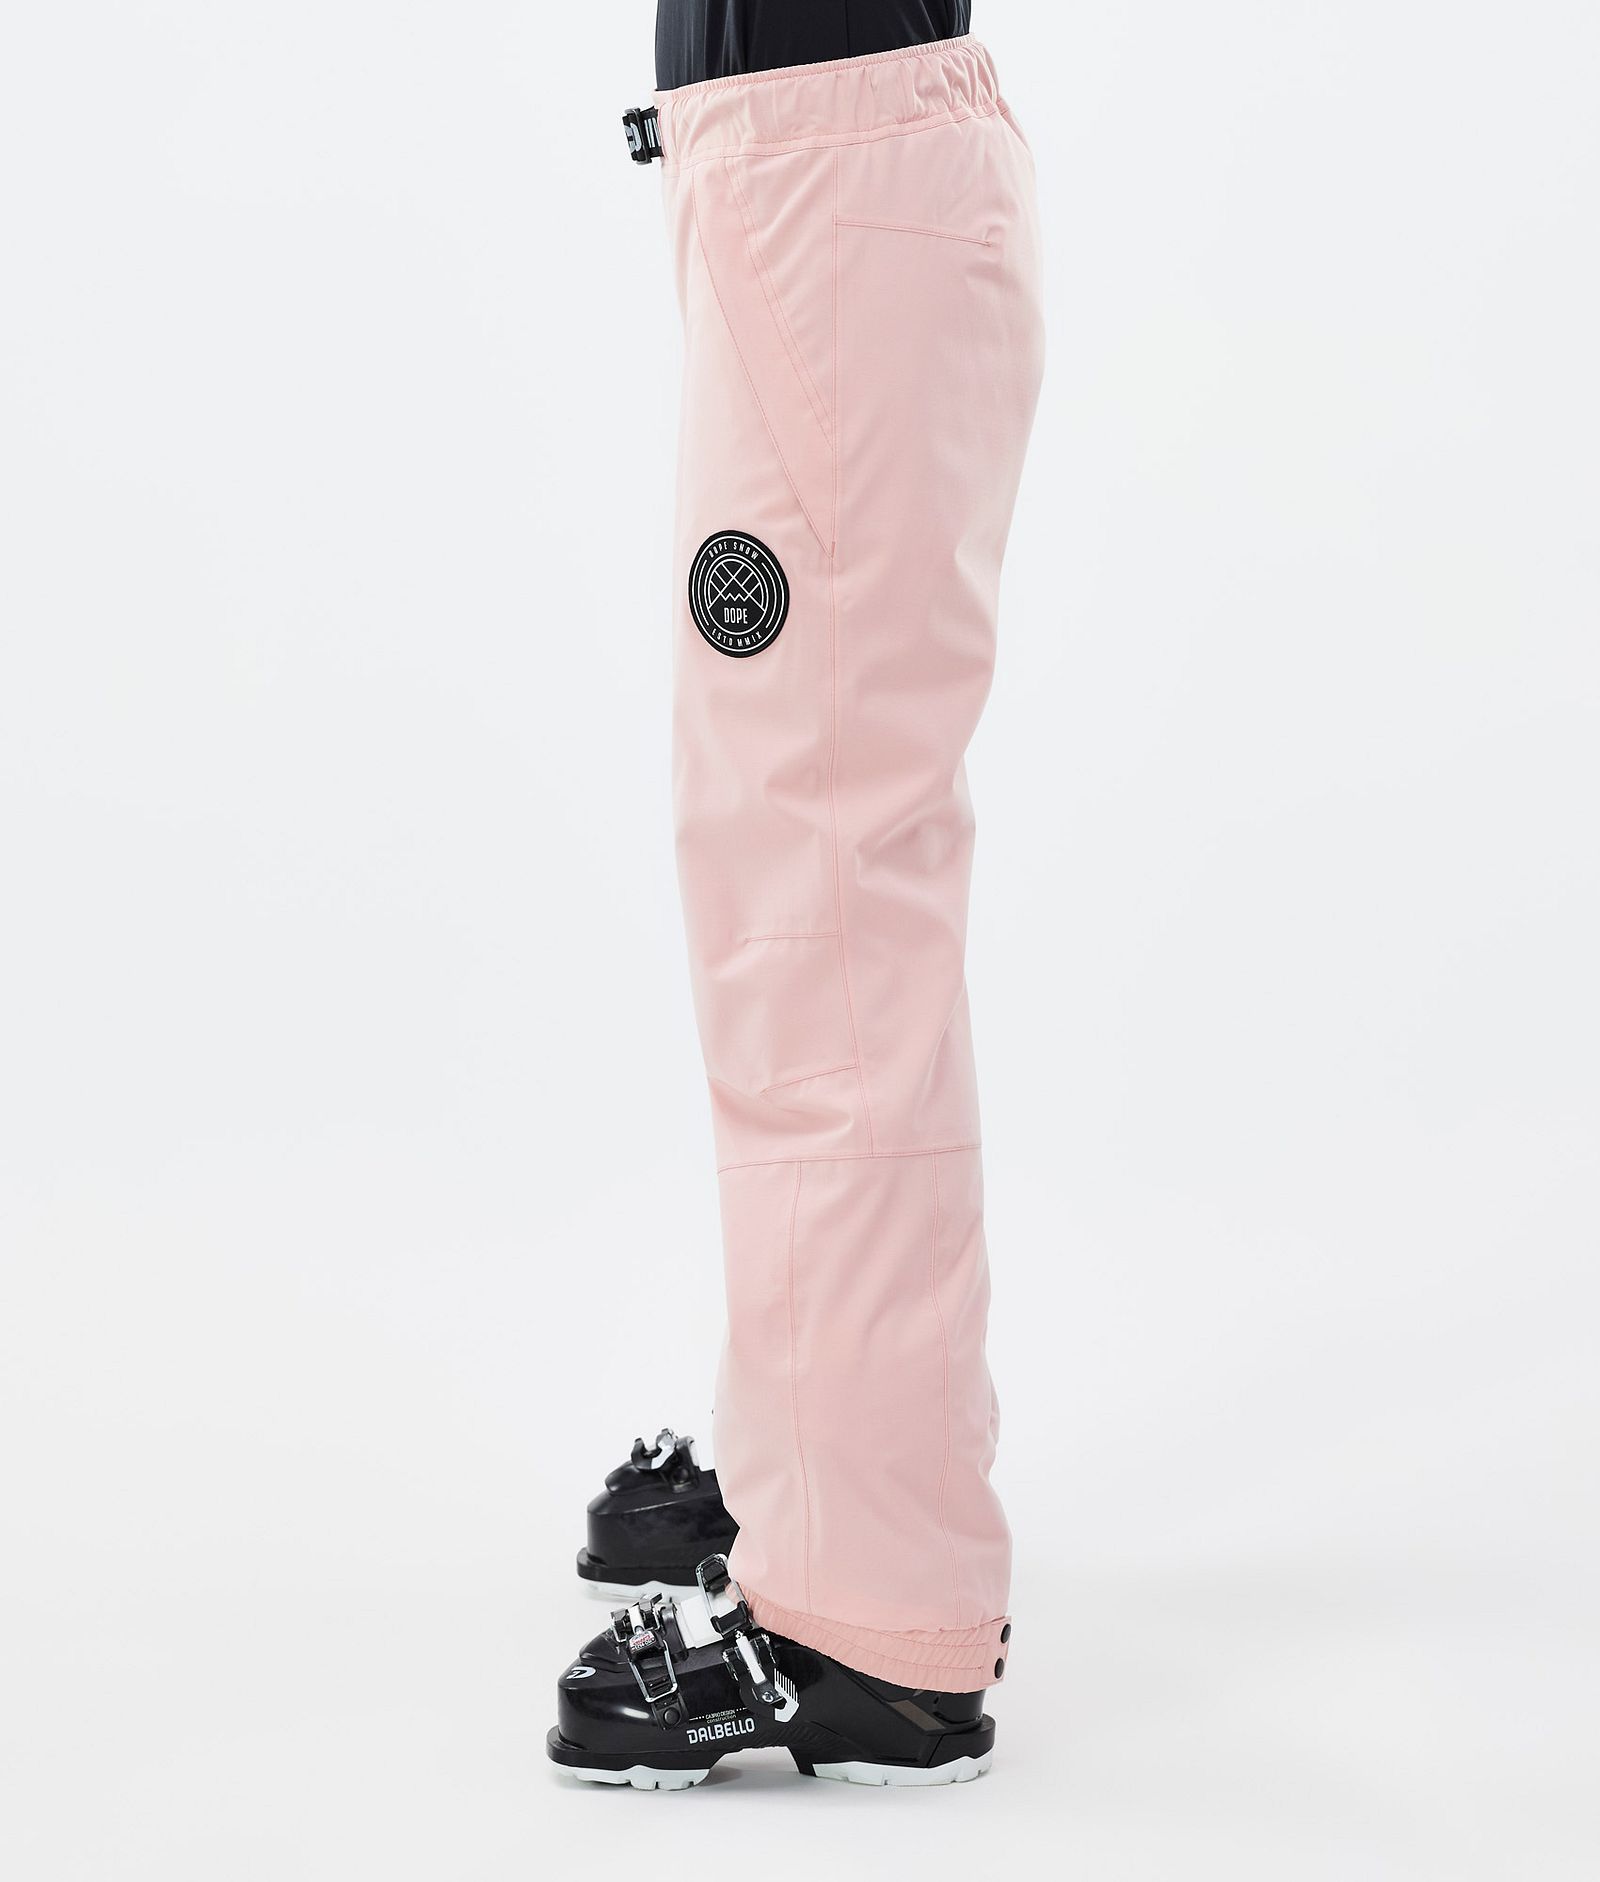 Blizzard W Pantalon de Ski Femme Soft Pink, Image 3 sur 5